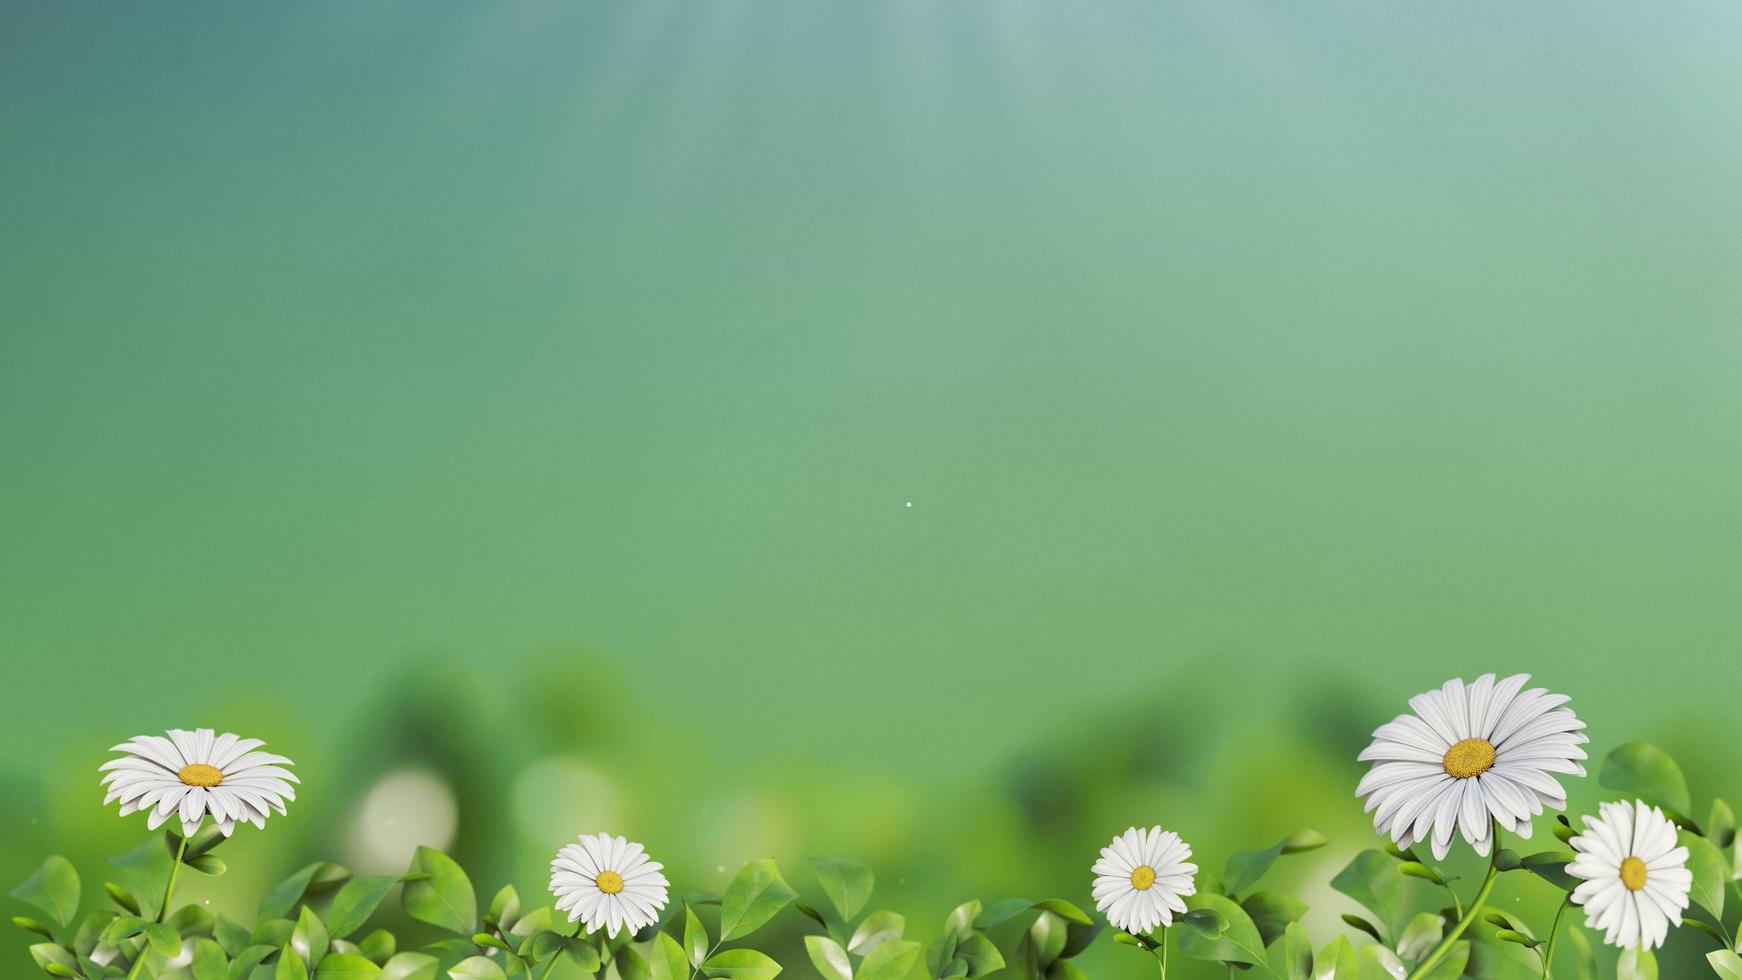 blomma med grön bakgrund foto